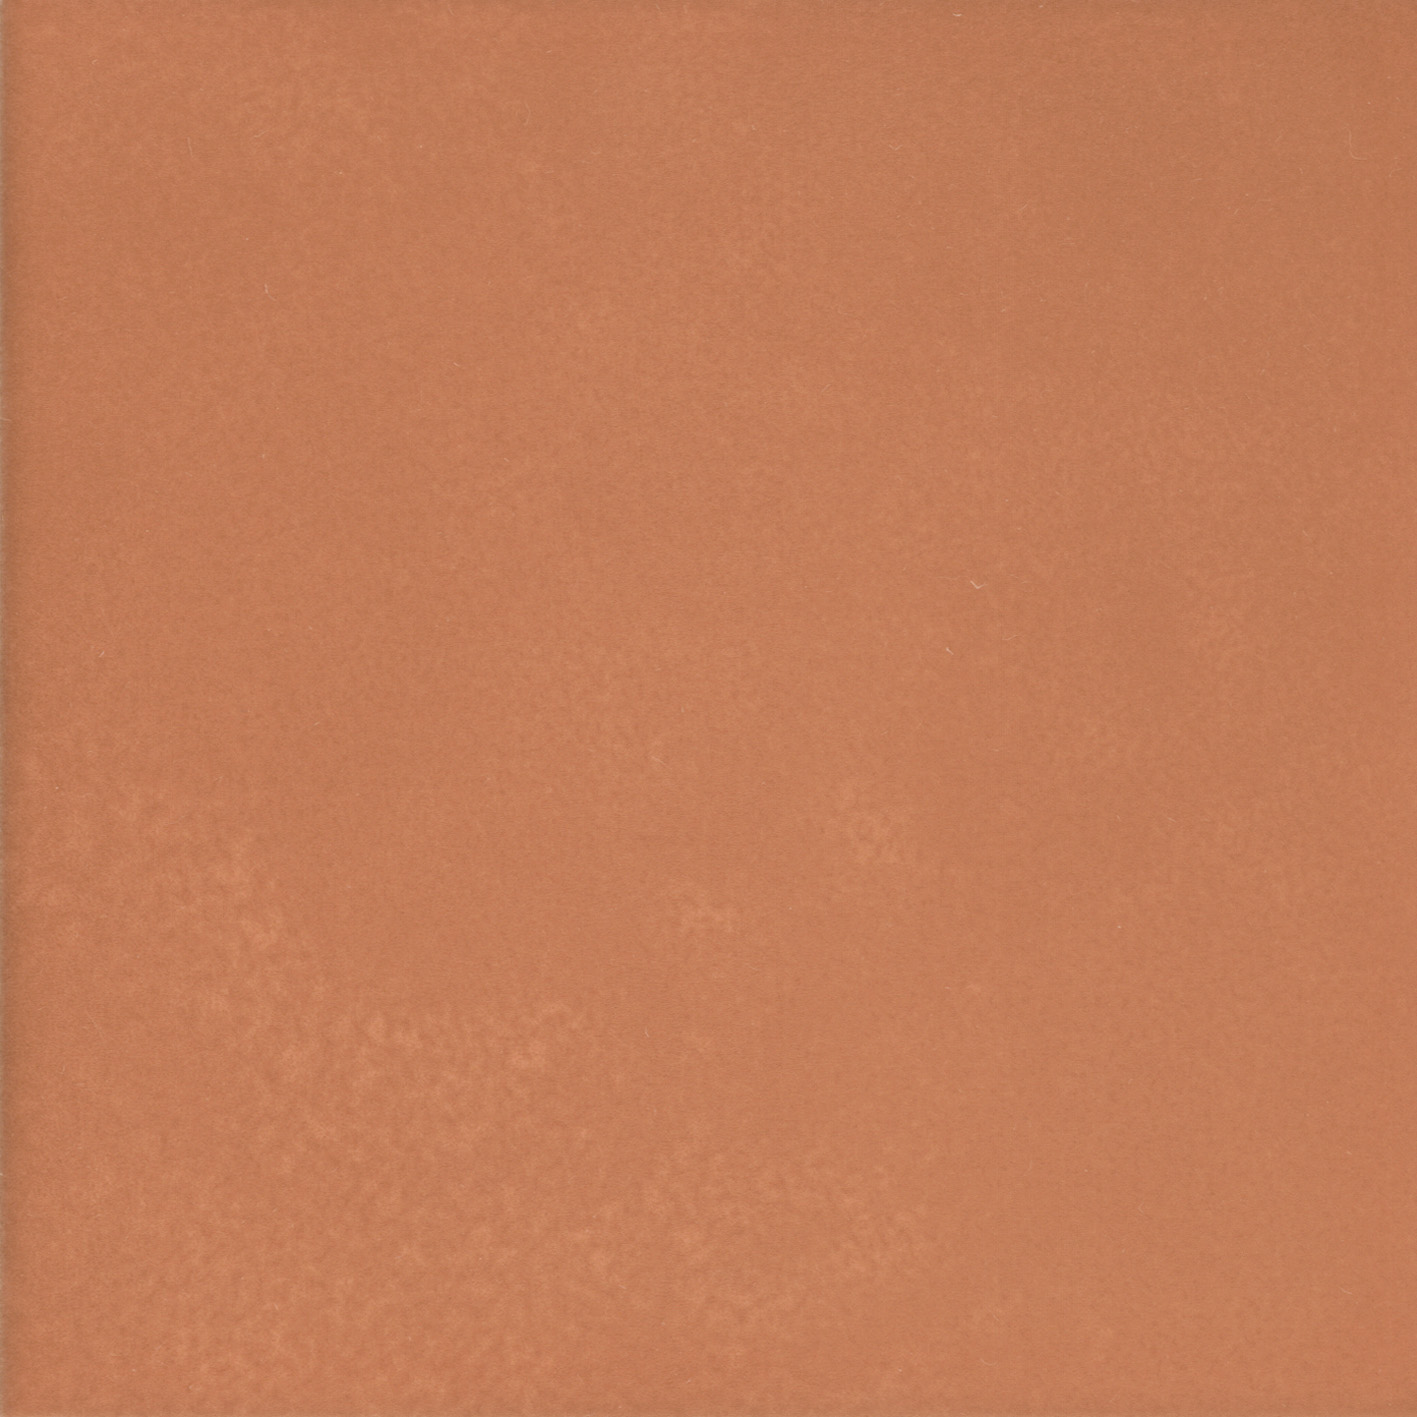 Плитка Kerama Marazzi Витраж оранжевый 17066 15x15 см плитка облицовочная нефрит террацио белая с крошкой 600x200x9 мм 10 шт 1 2 кв м